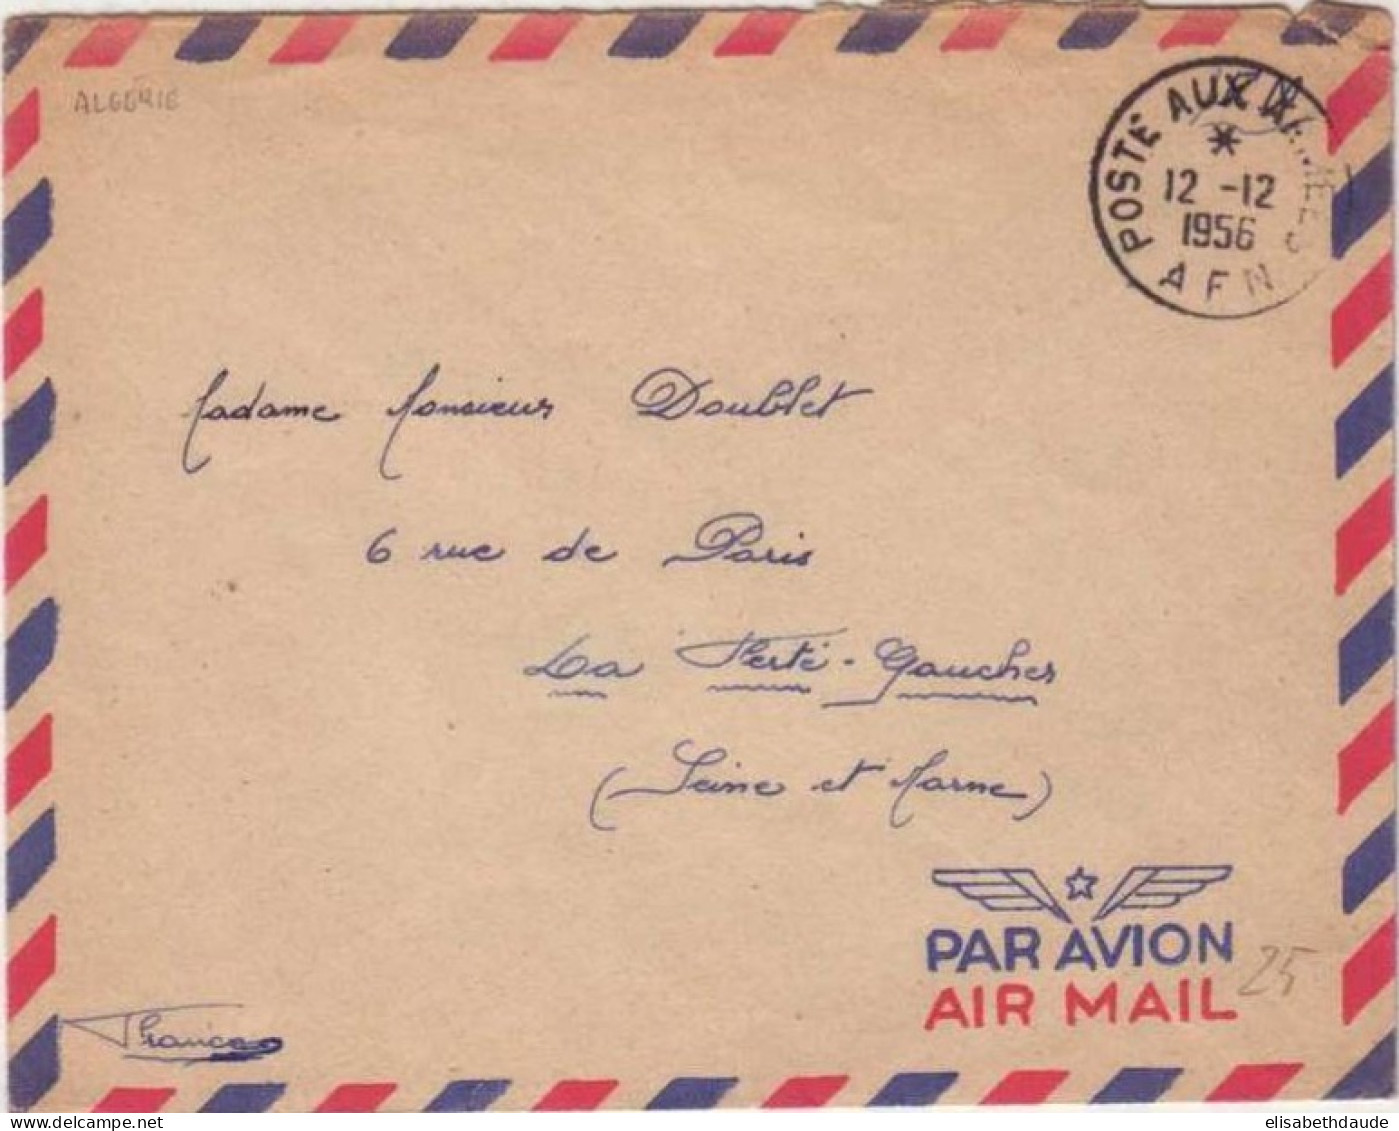 ALGERIE - 1956 - LETTRE PAR AVION En FRANCHISE POSTALE FM De La POSTE Aux ARMEE En AFN - SP 87715 - Covers & Documents